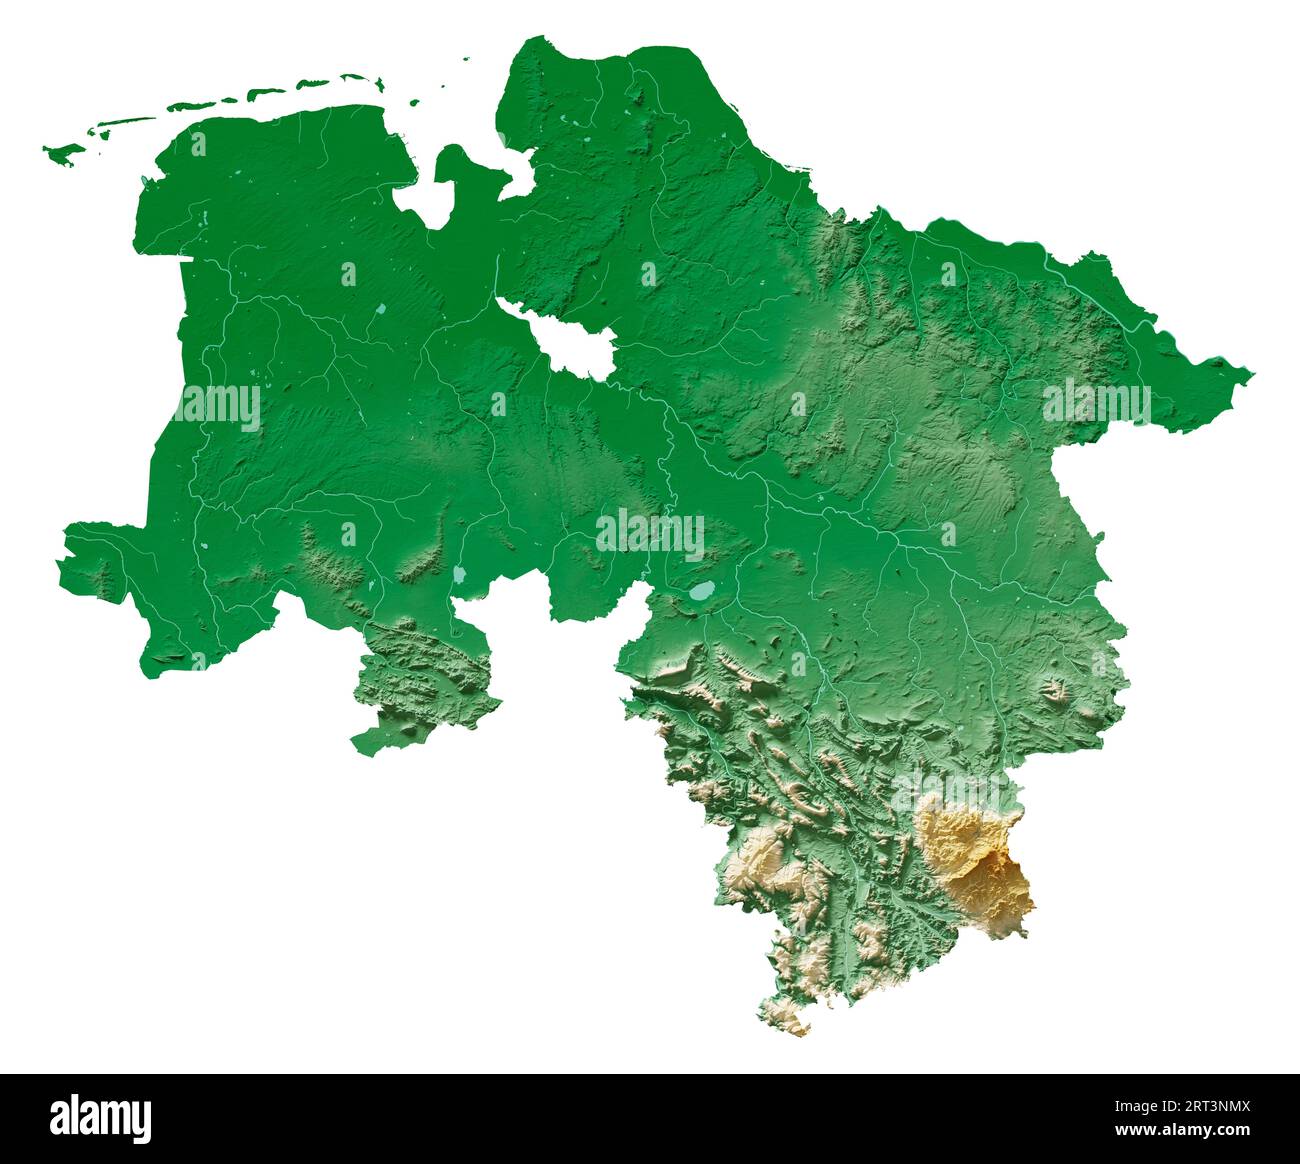 Niedersachsen. État allemand (Land). Rendu 3D détaillé d'une carte en relief ombré, rivières, lacs. Coloré par l'altitude. Fond blanc pur. Banque D'Images